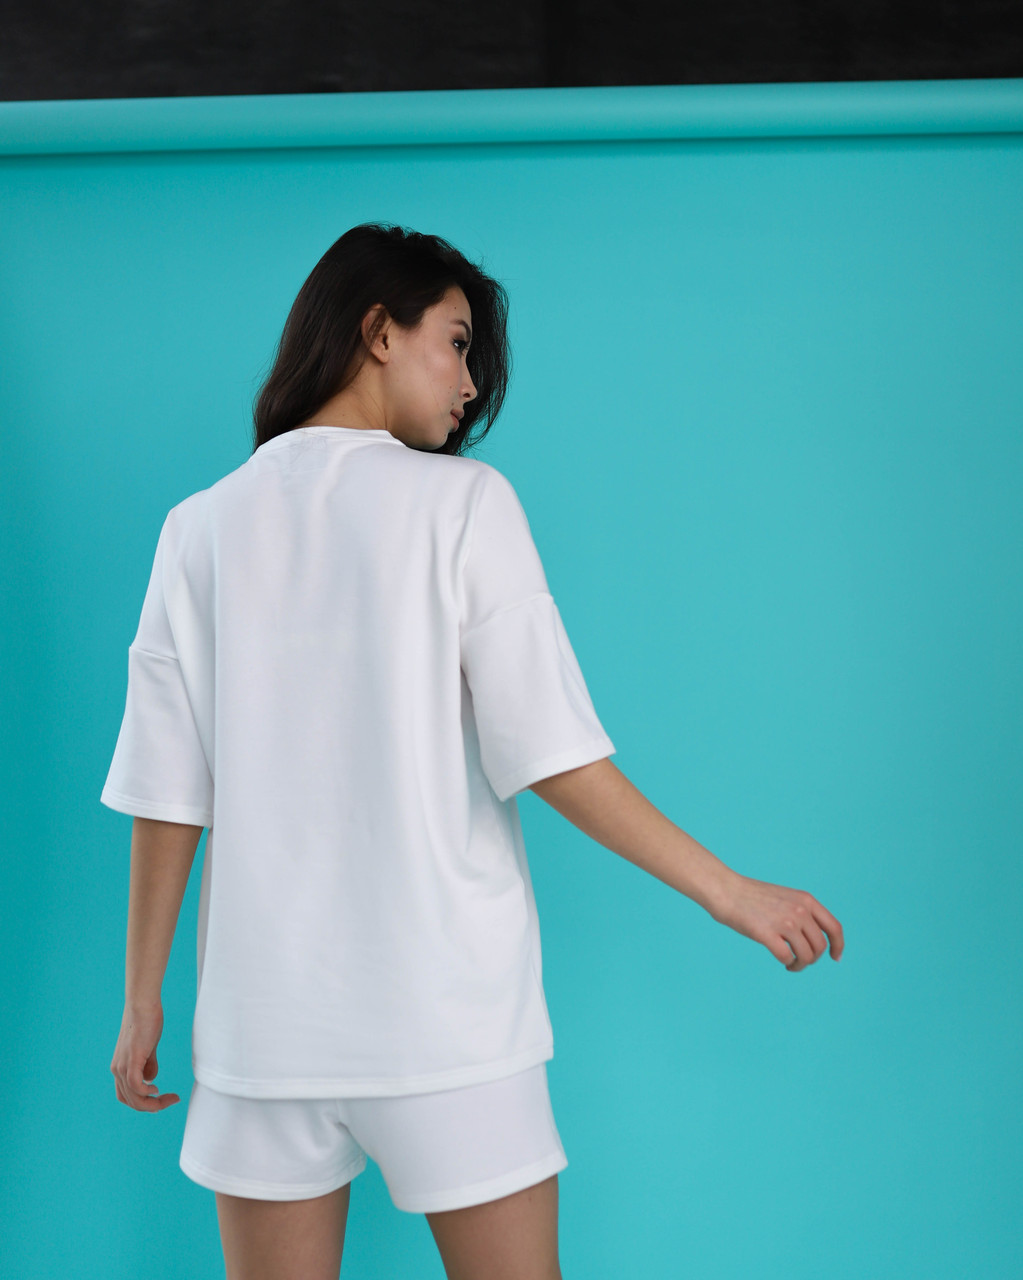 Летний комплект футболка и шорты женский белый оверсайз модель Мия TURWEAR - Фото 1